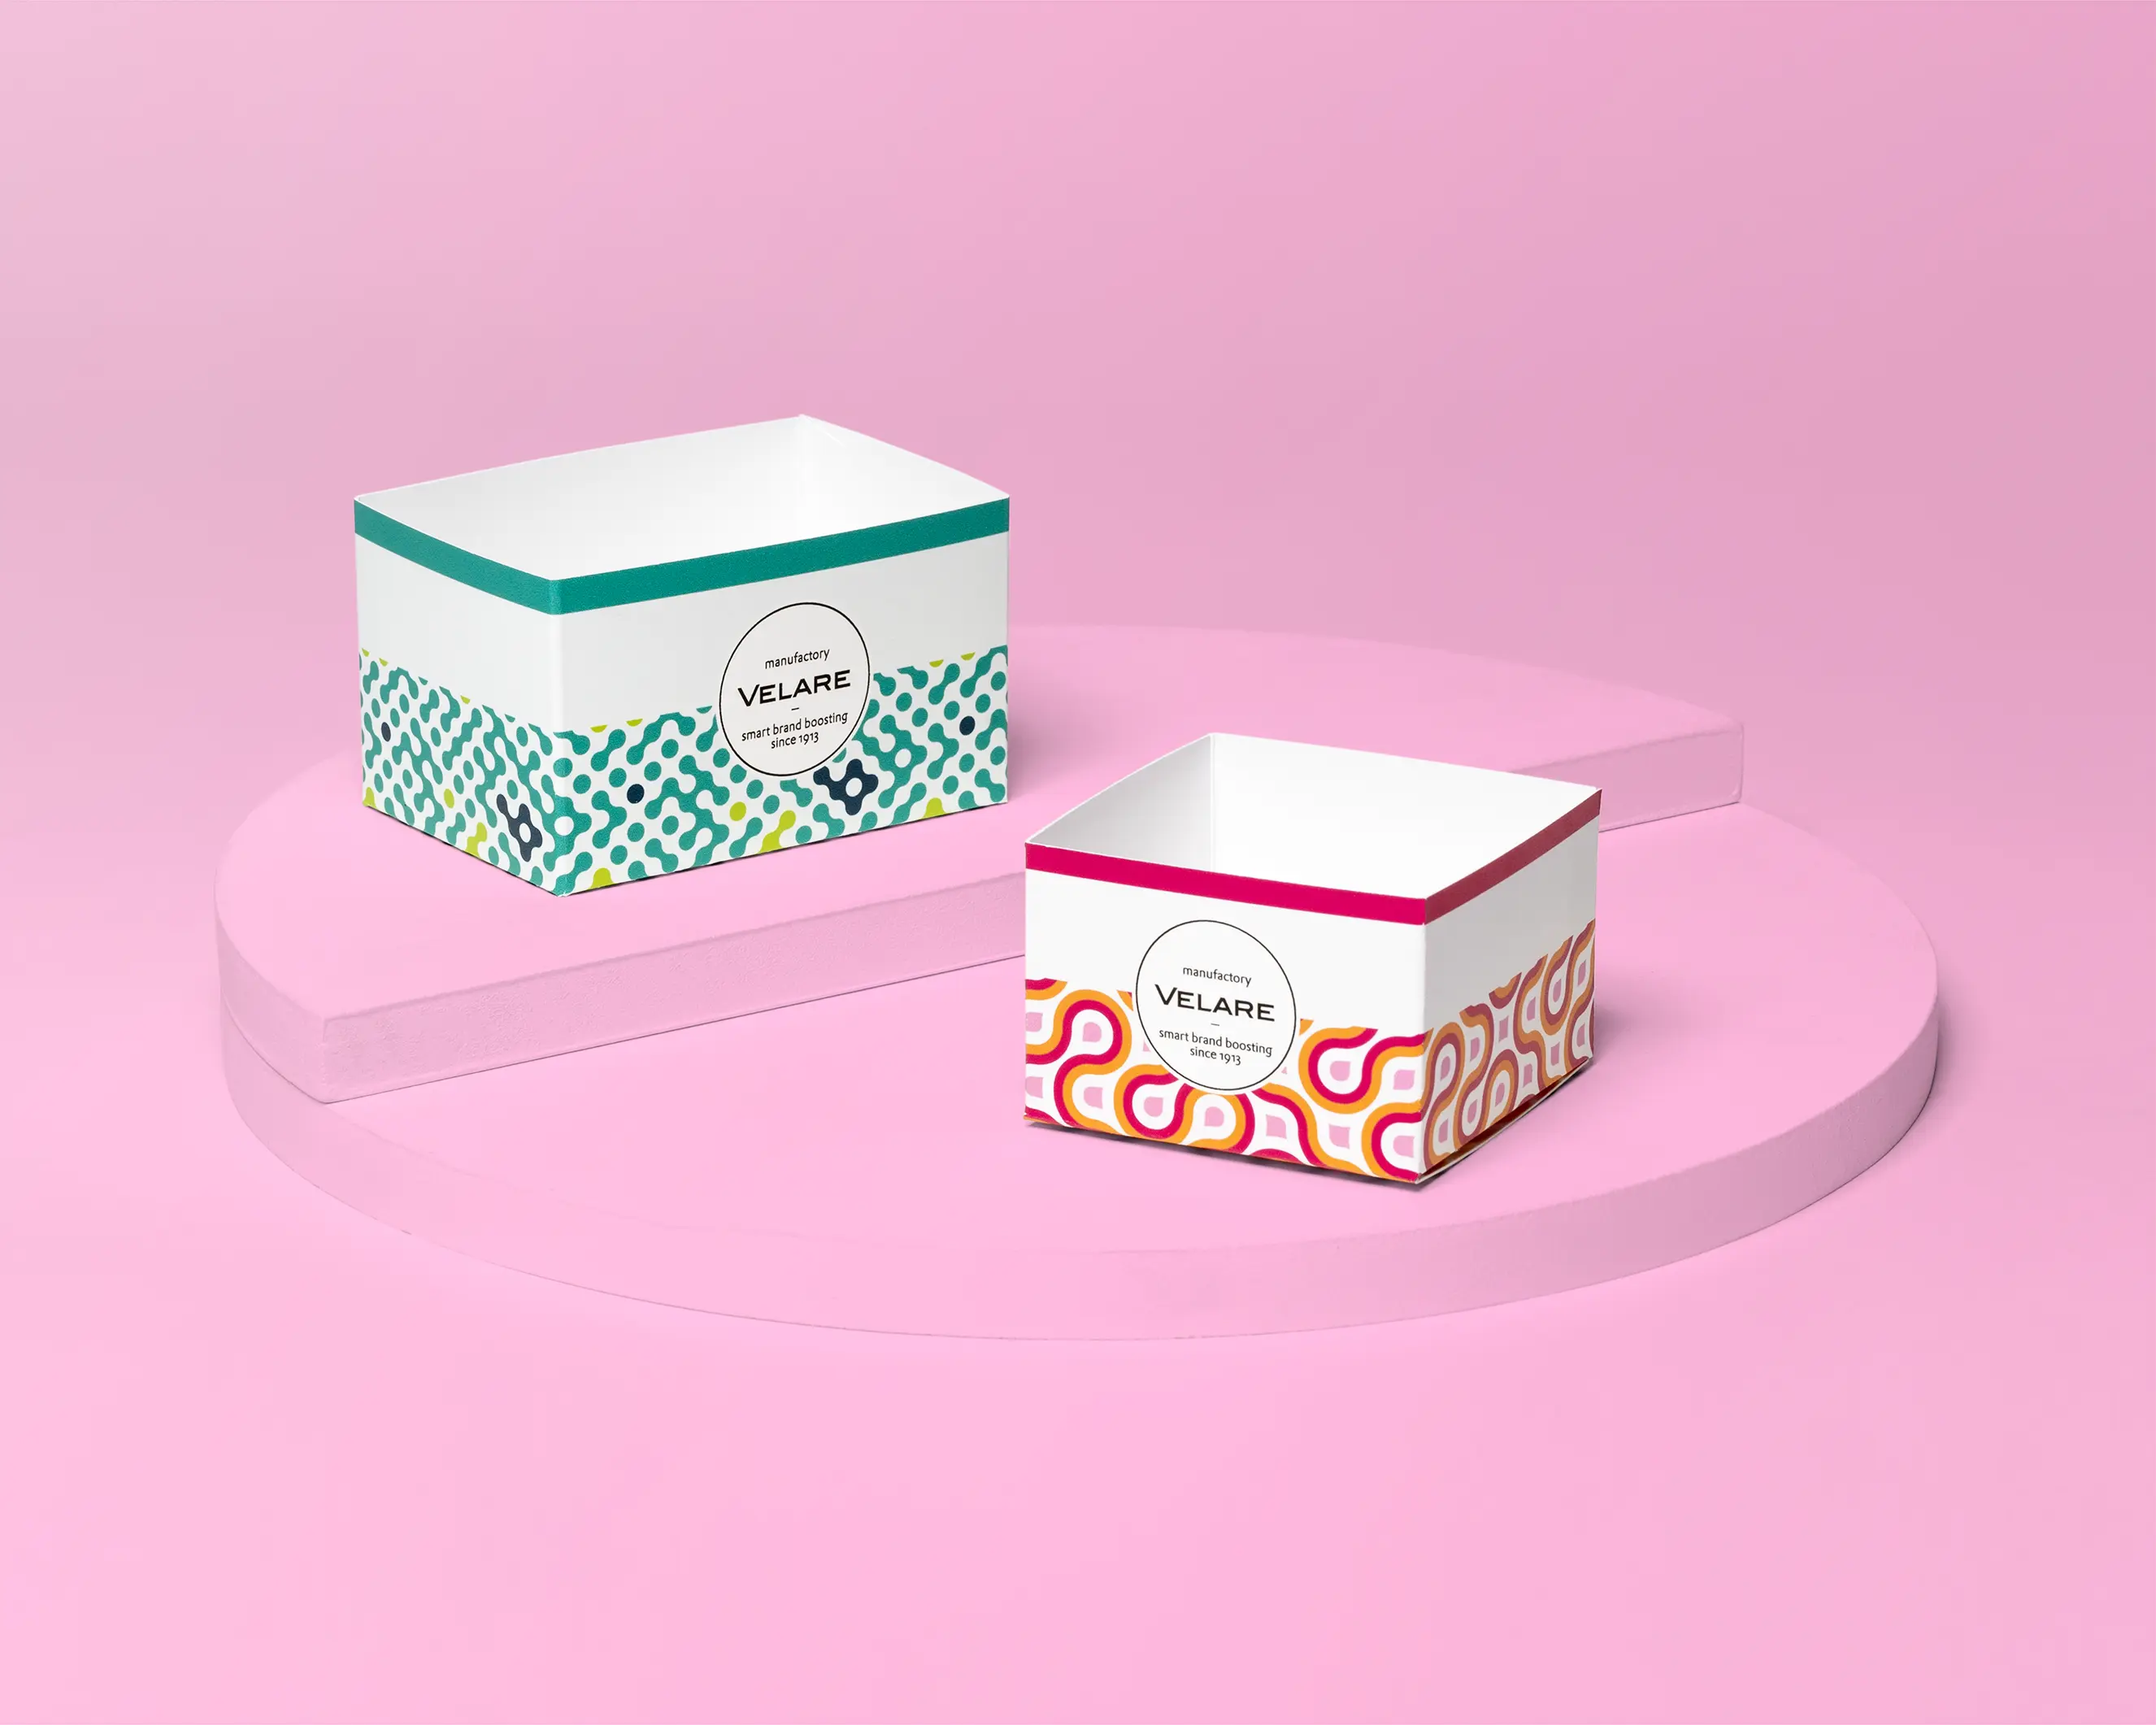 Offener Schuber mit Steckboden, zwei Schachteln, pinker Hintergrund